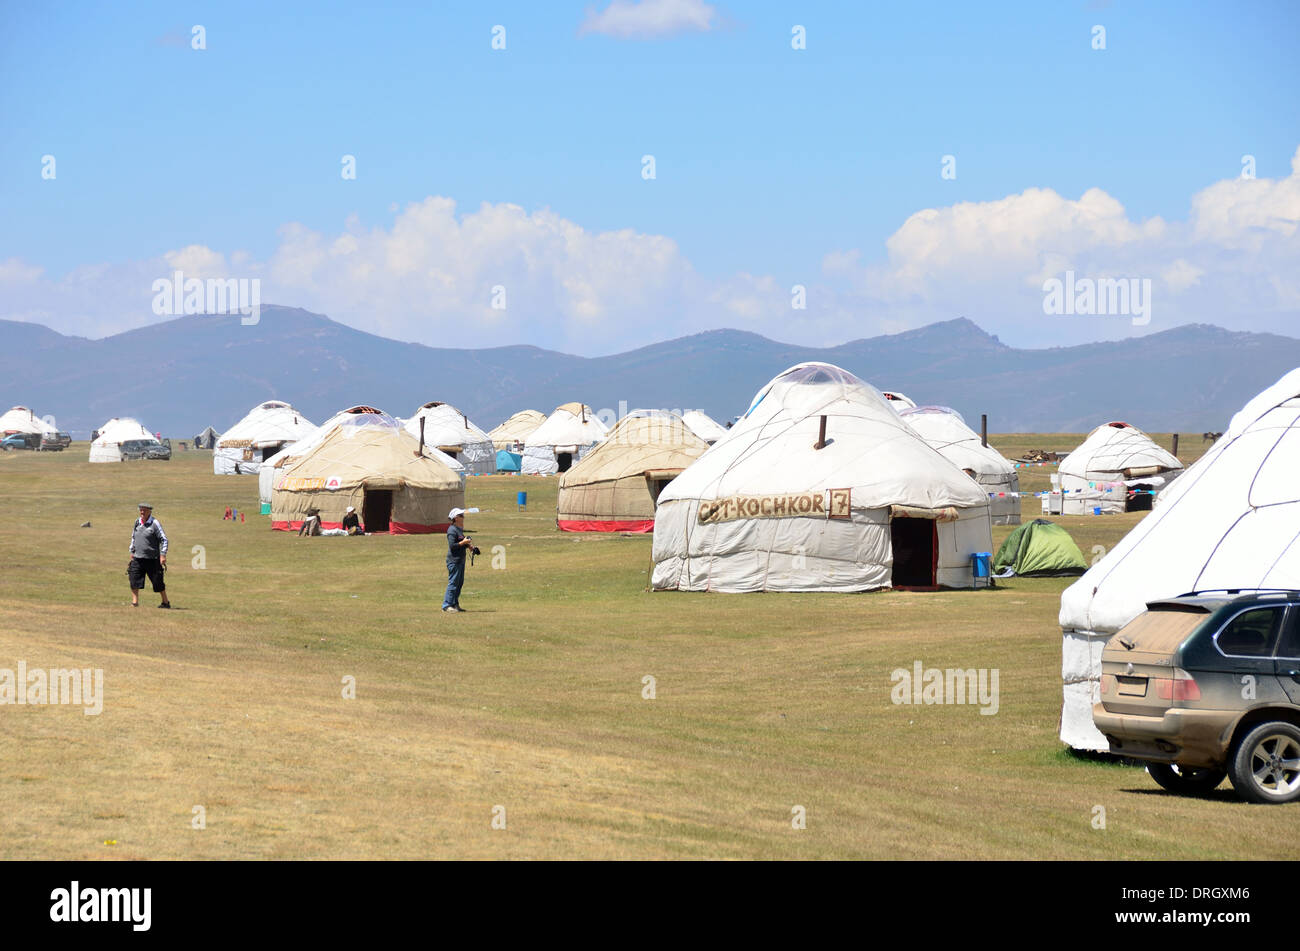 Les yourtes kirghizes près du lac Song-Kol en Europe centrale Kirghizistan Banque D'Images